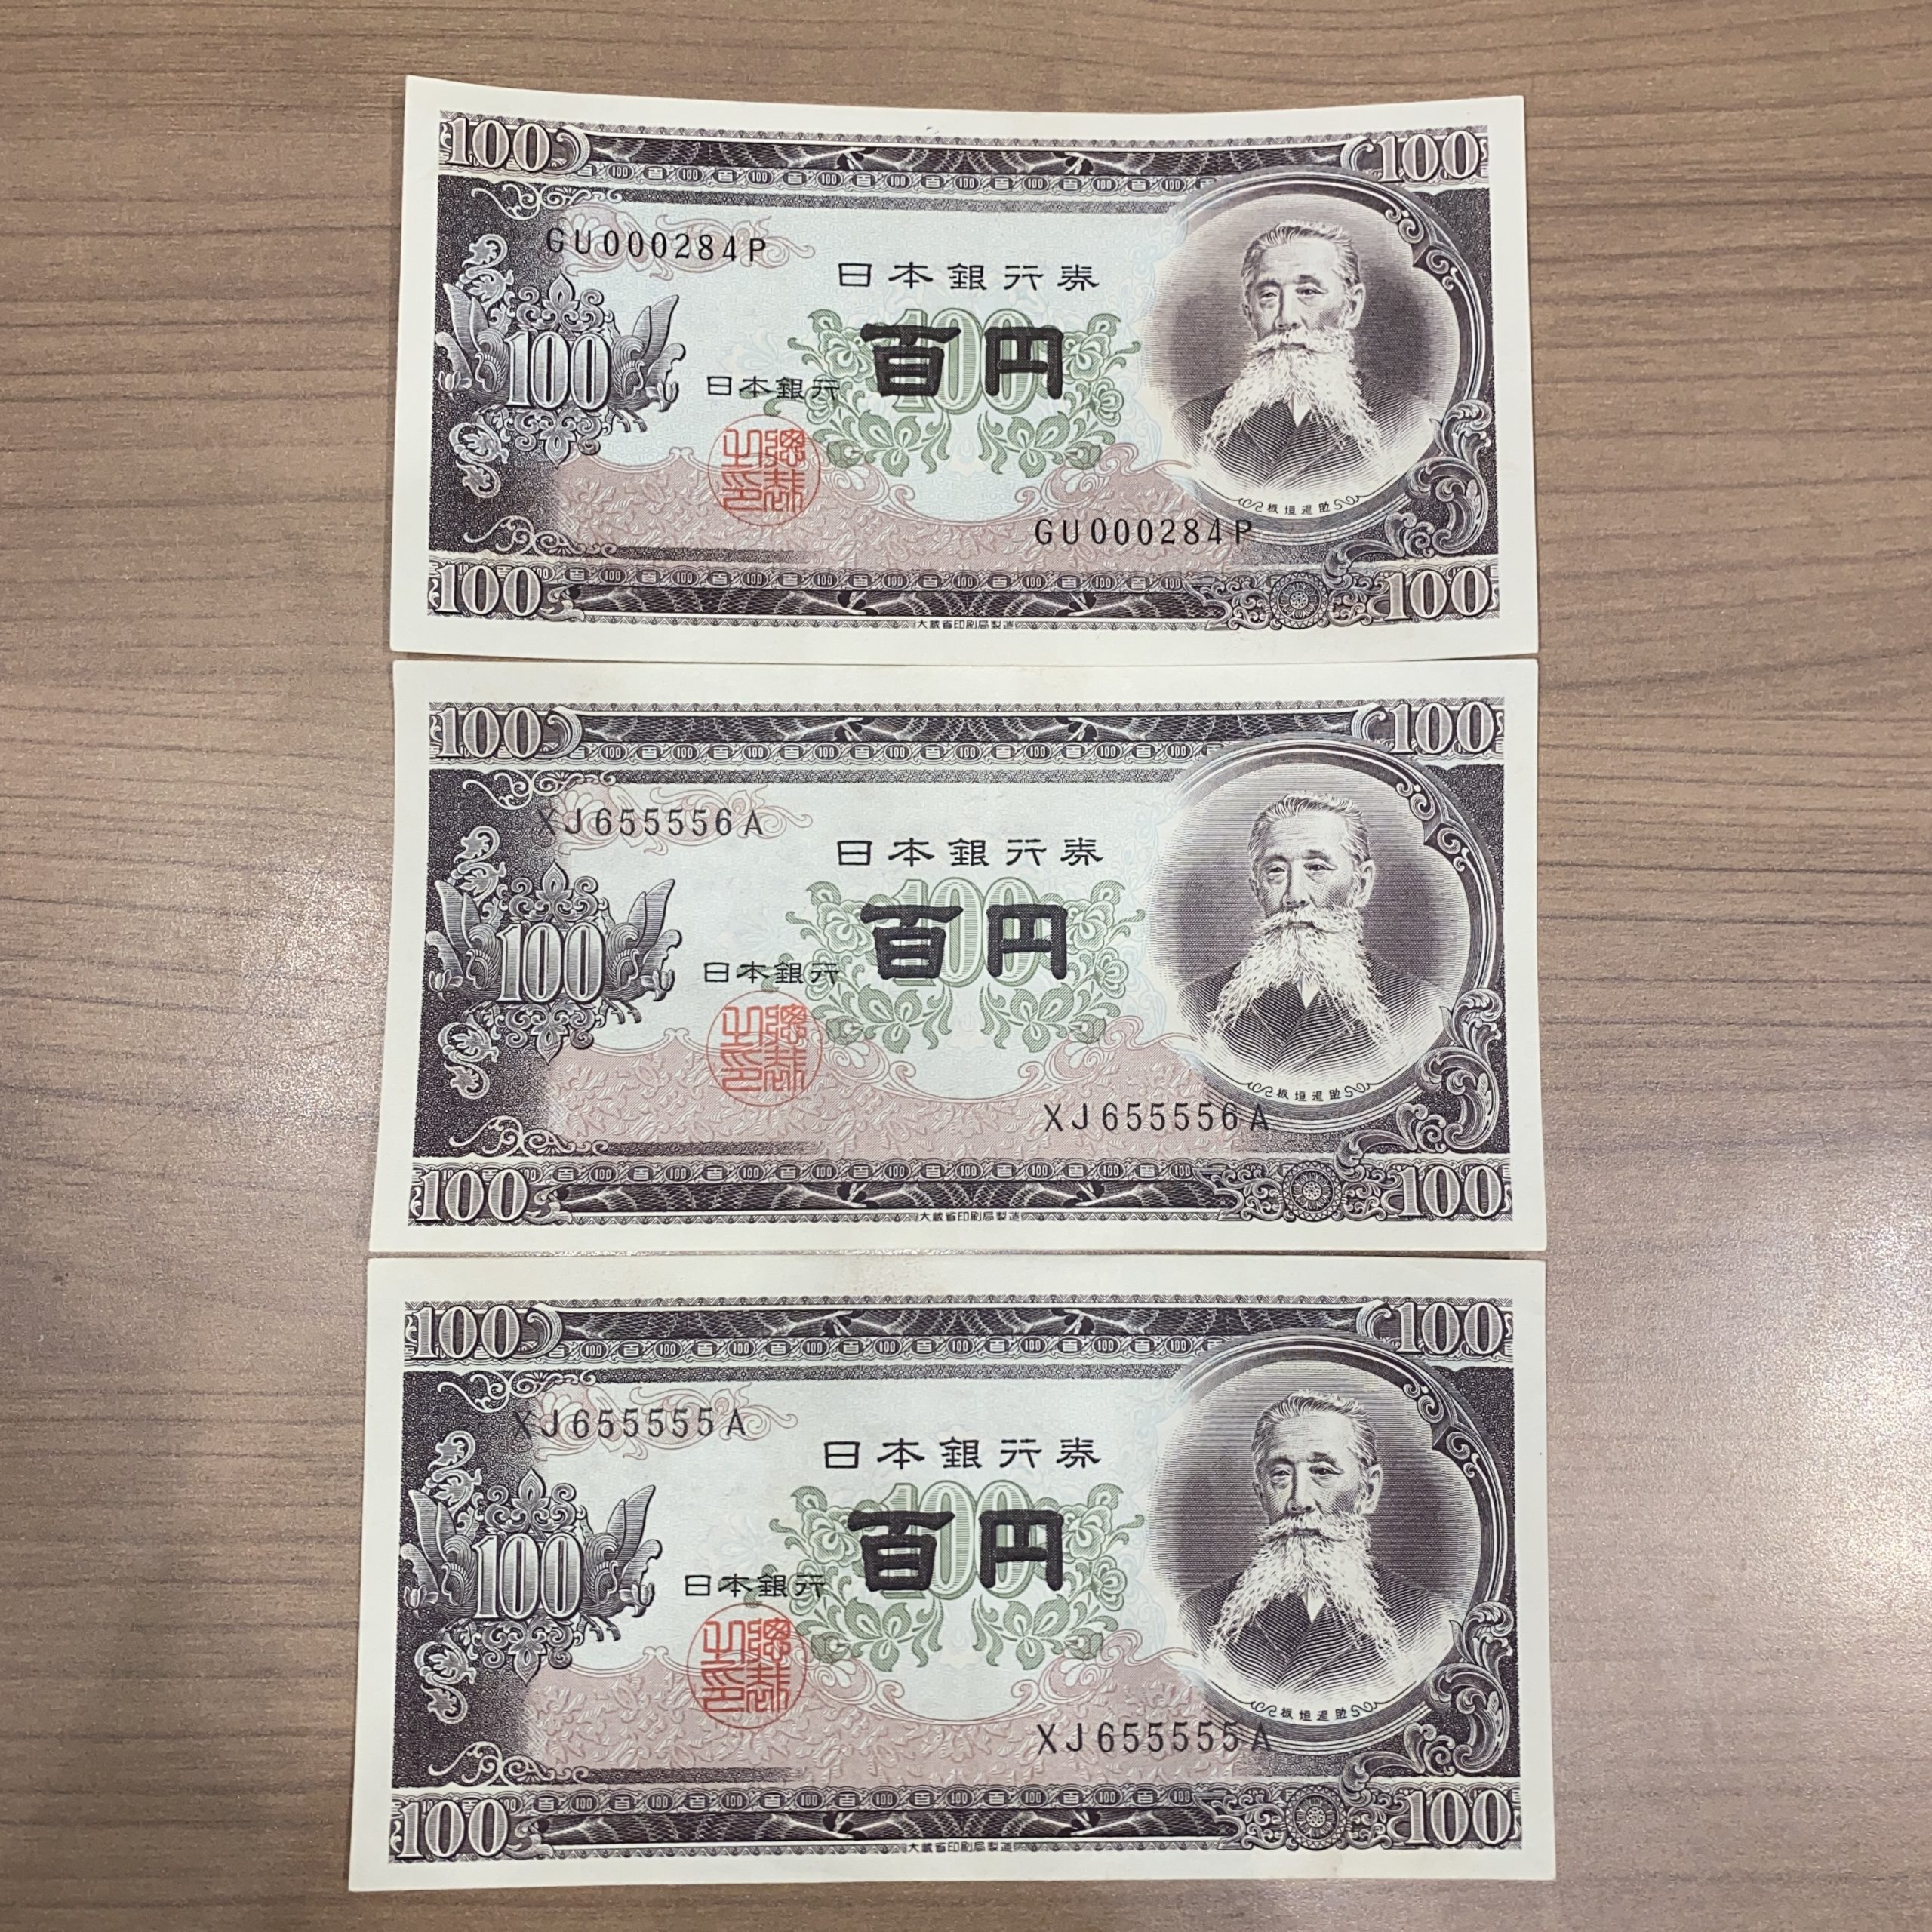 【日本古紙幣】100円札 板垣退助 珍番号